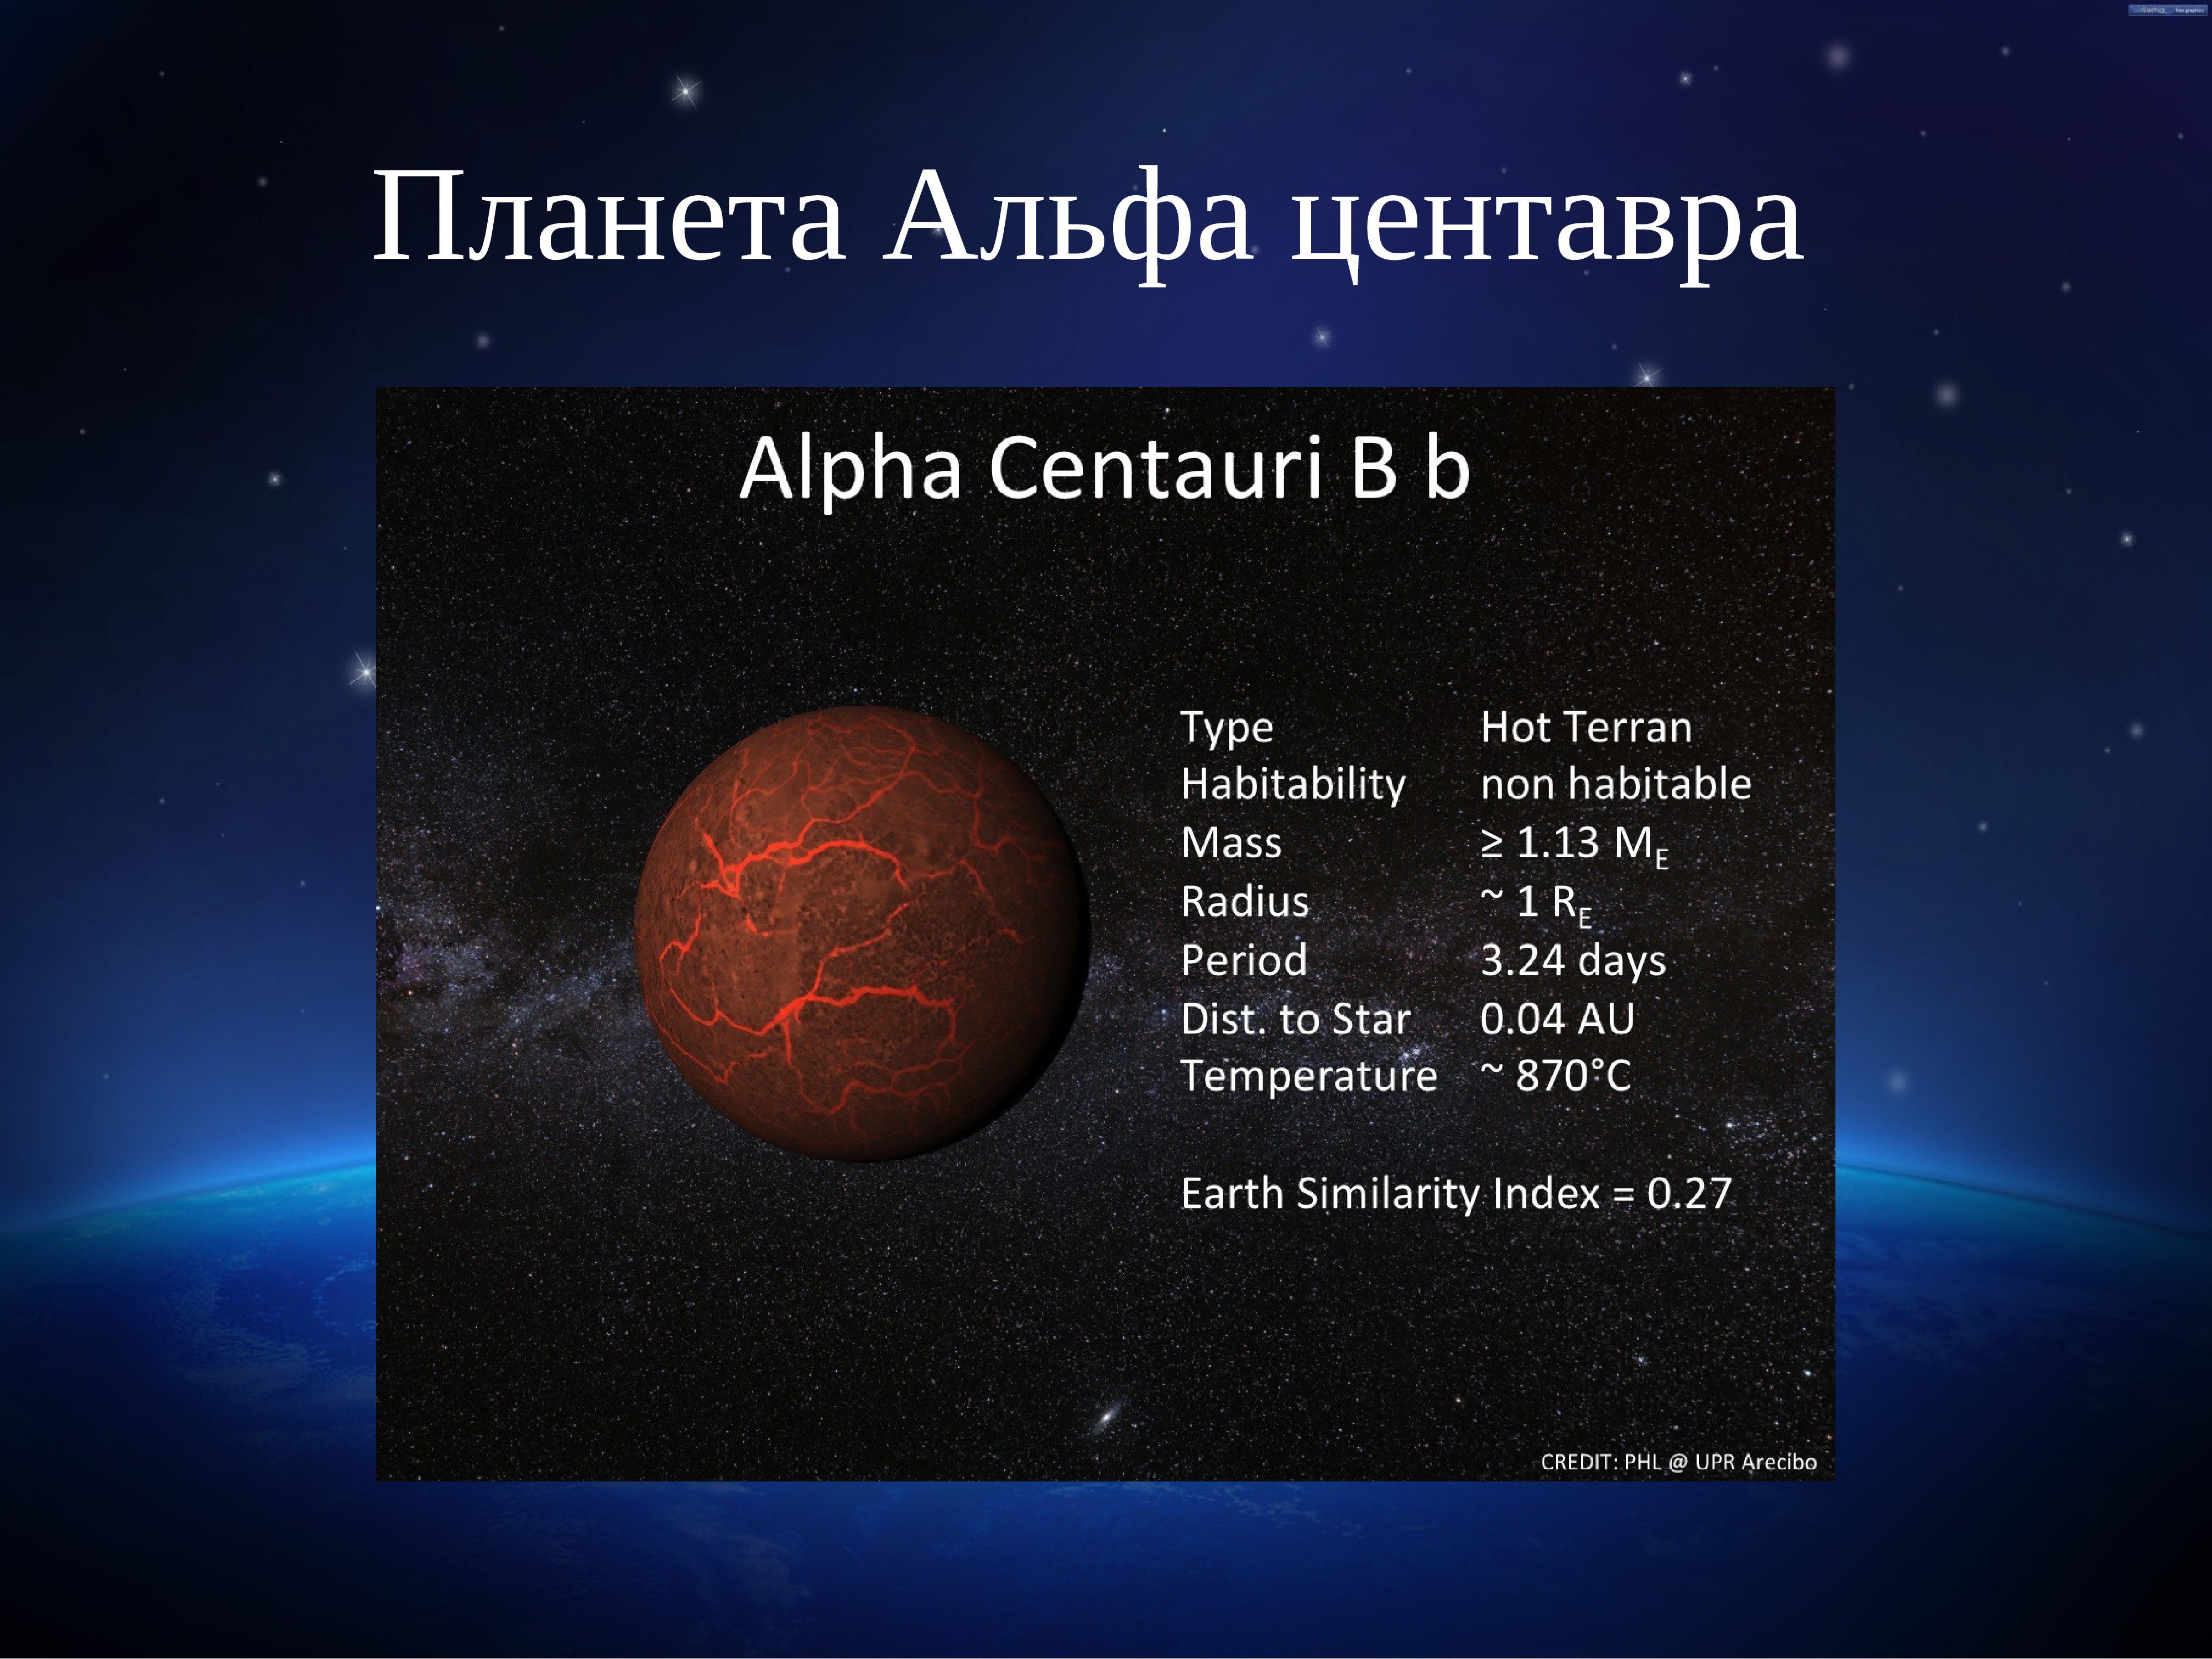 Альфа центавра планеты. Планетная система Альфа Центавра планеты. Альфа Центавра звезда планеты. Солнечная система Альфа Центавра планеты. Альфа Центавра и масса звезды.